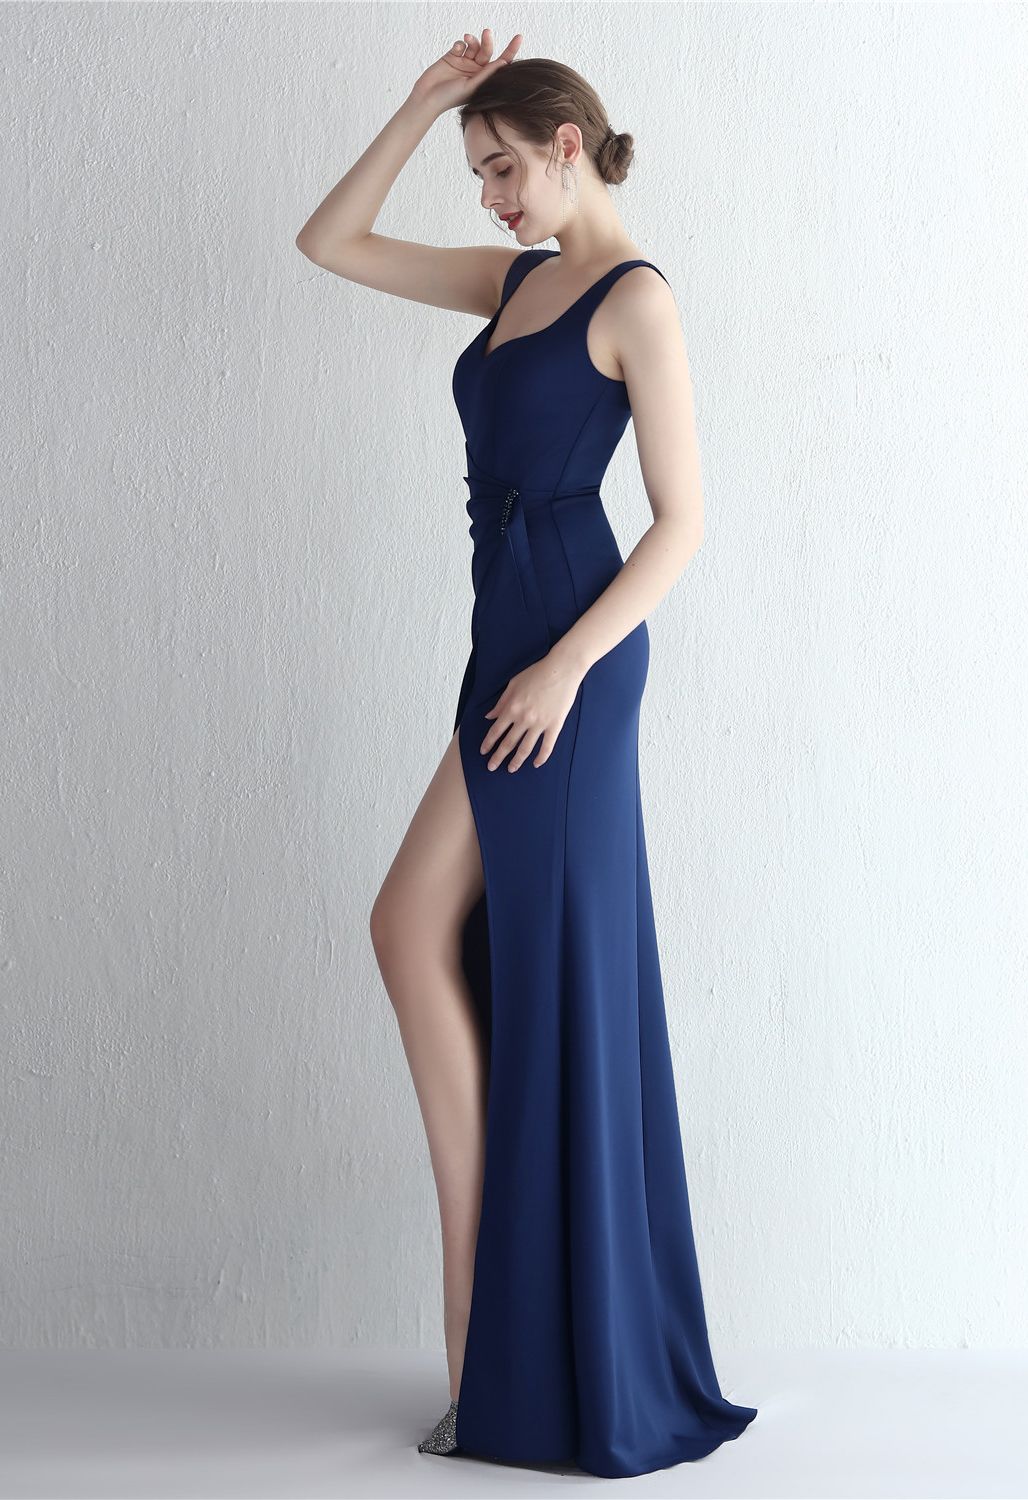 Gerafftes Kleid mit hohem Schlitz in Marineblau